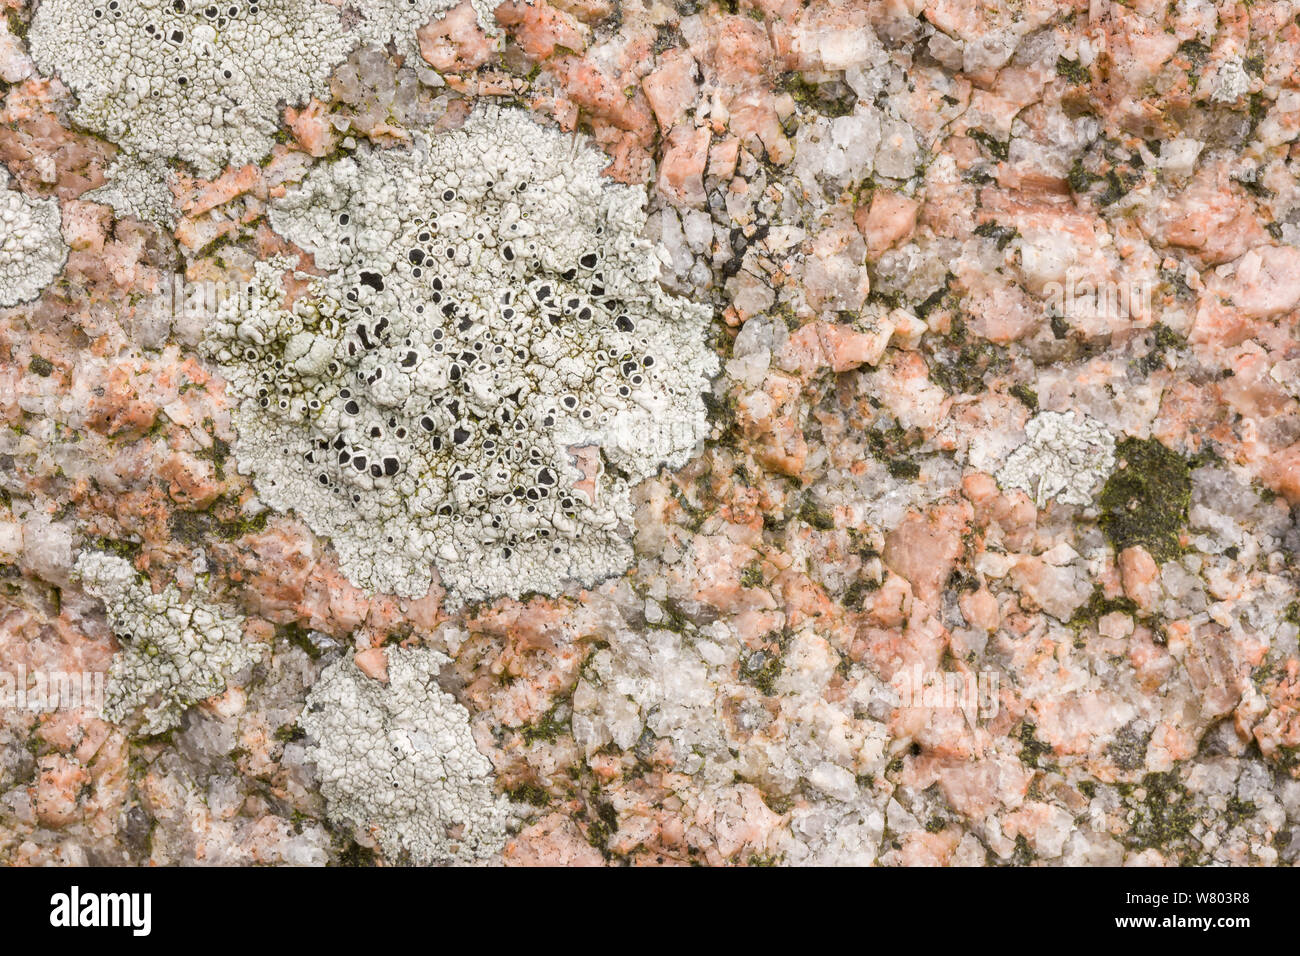 Crustose lichen (Lecanora gangaleoides) on coastal granite, Iona, Scotland, UK, June. Stock Photo